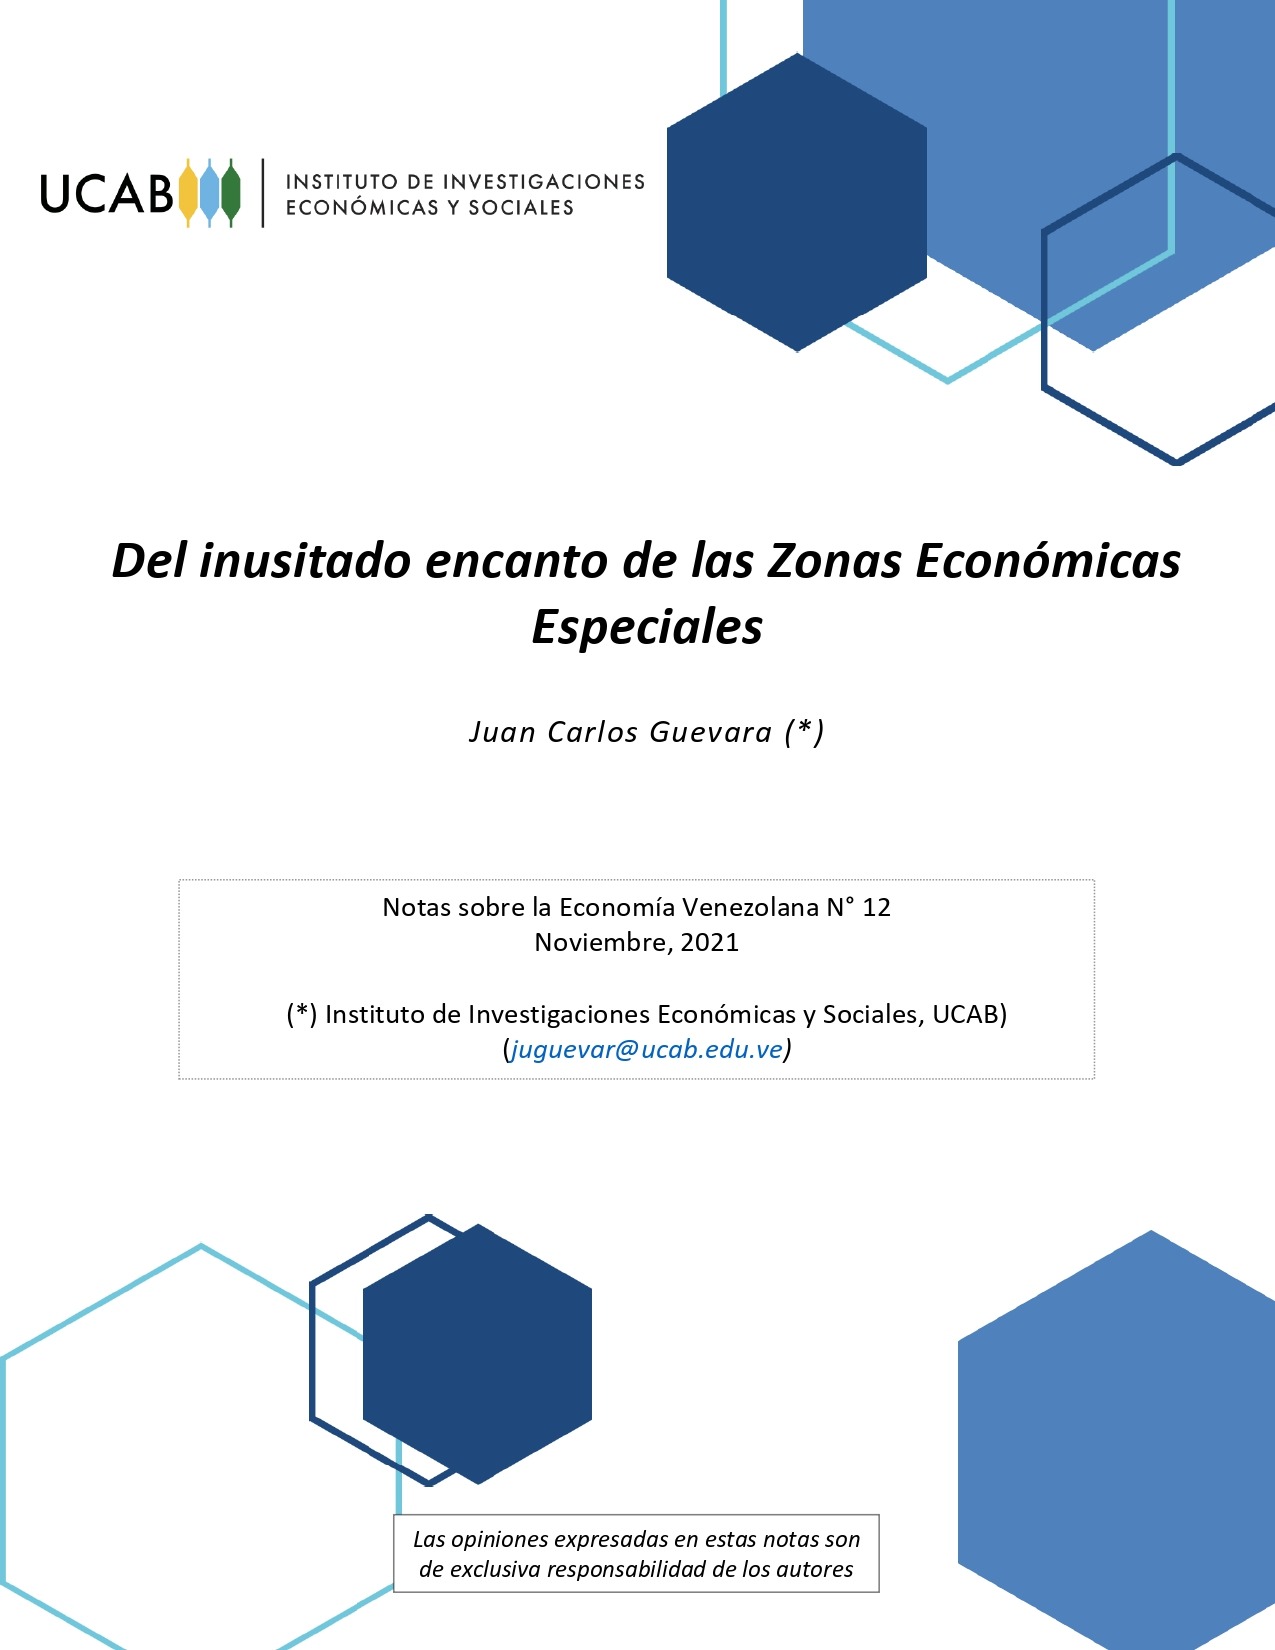 Notas sobre la Economía Venezolana N° 12